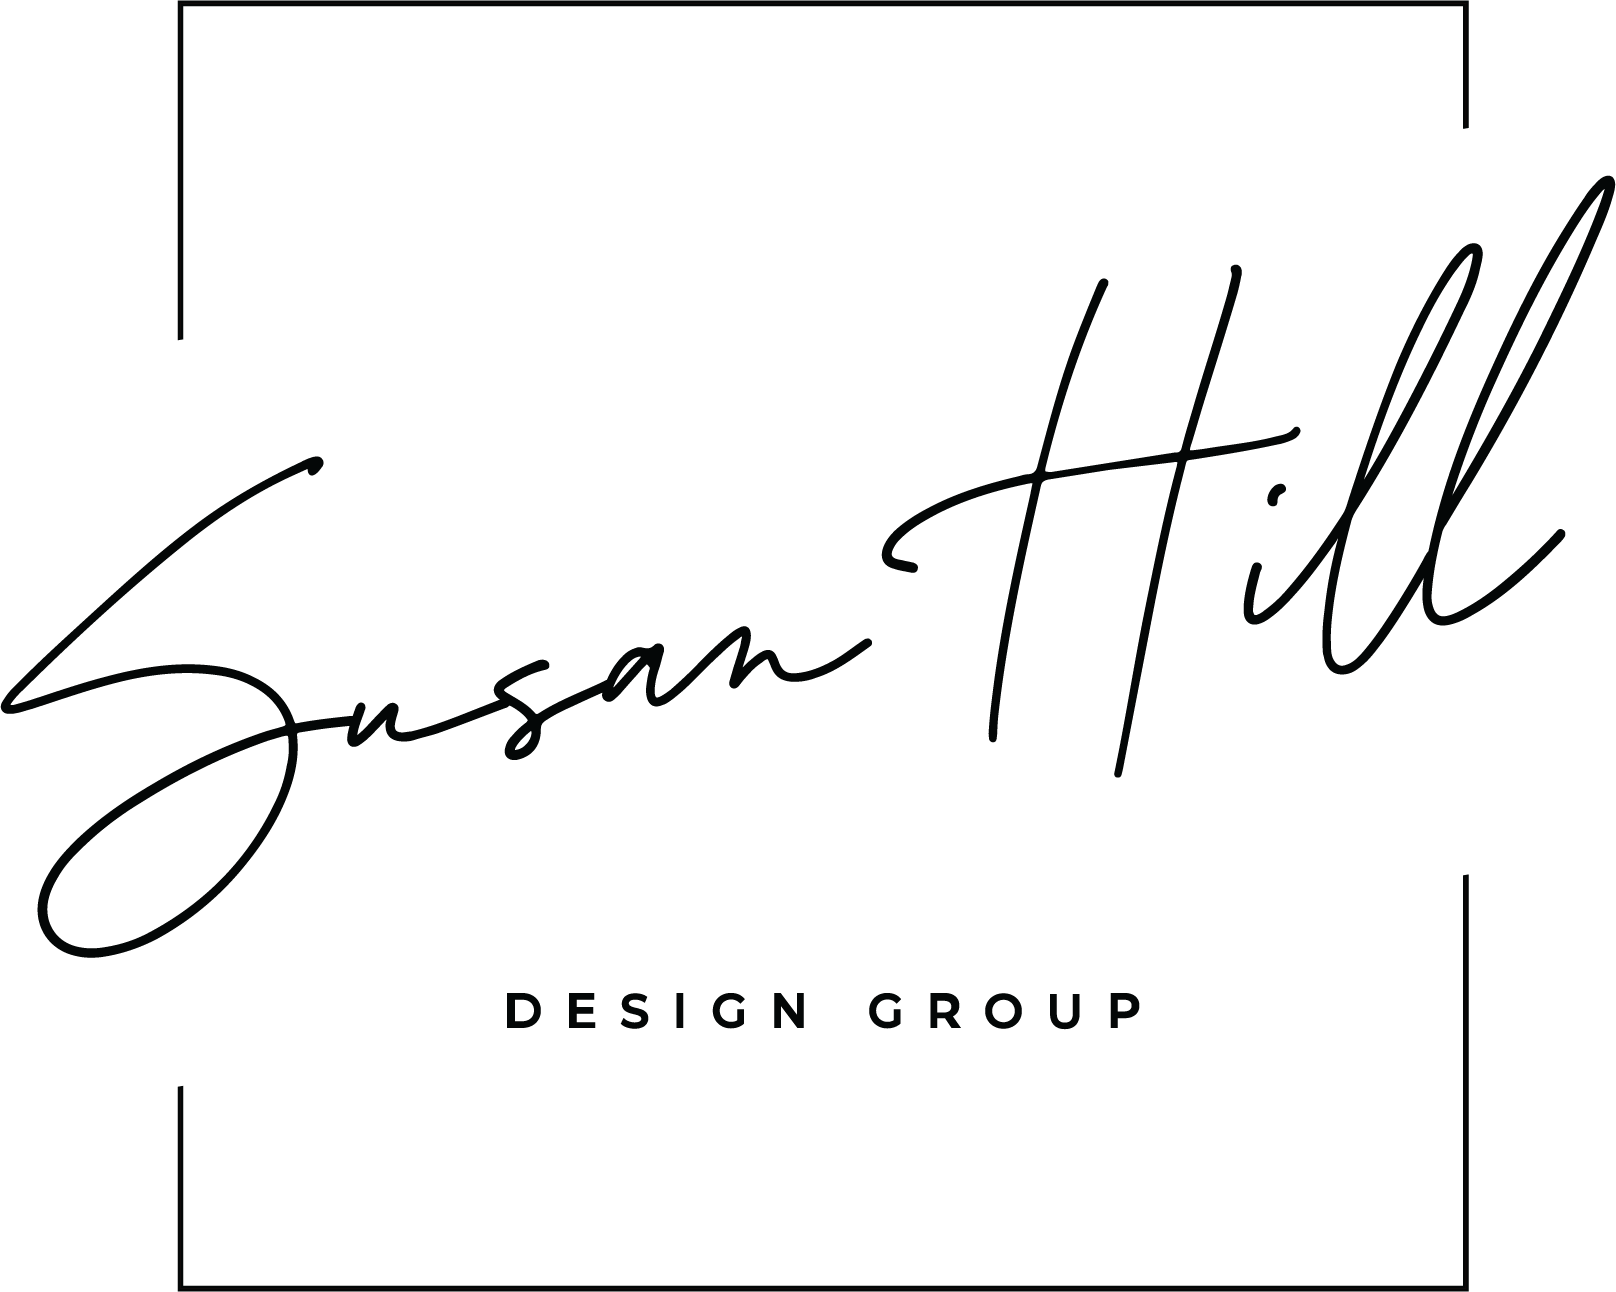 Susan Hill Design Group_Black Logo Variation (2).png